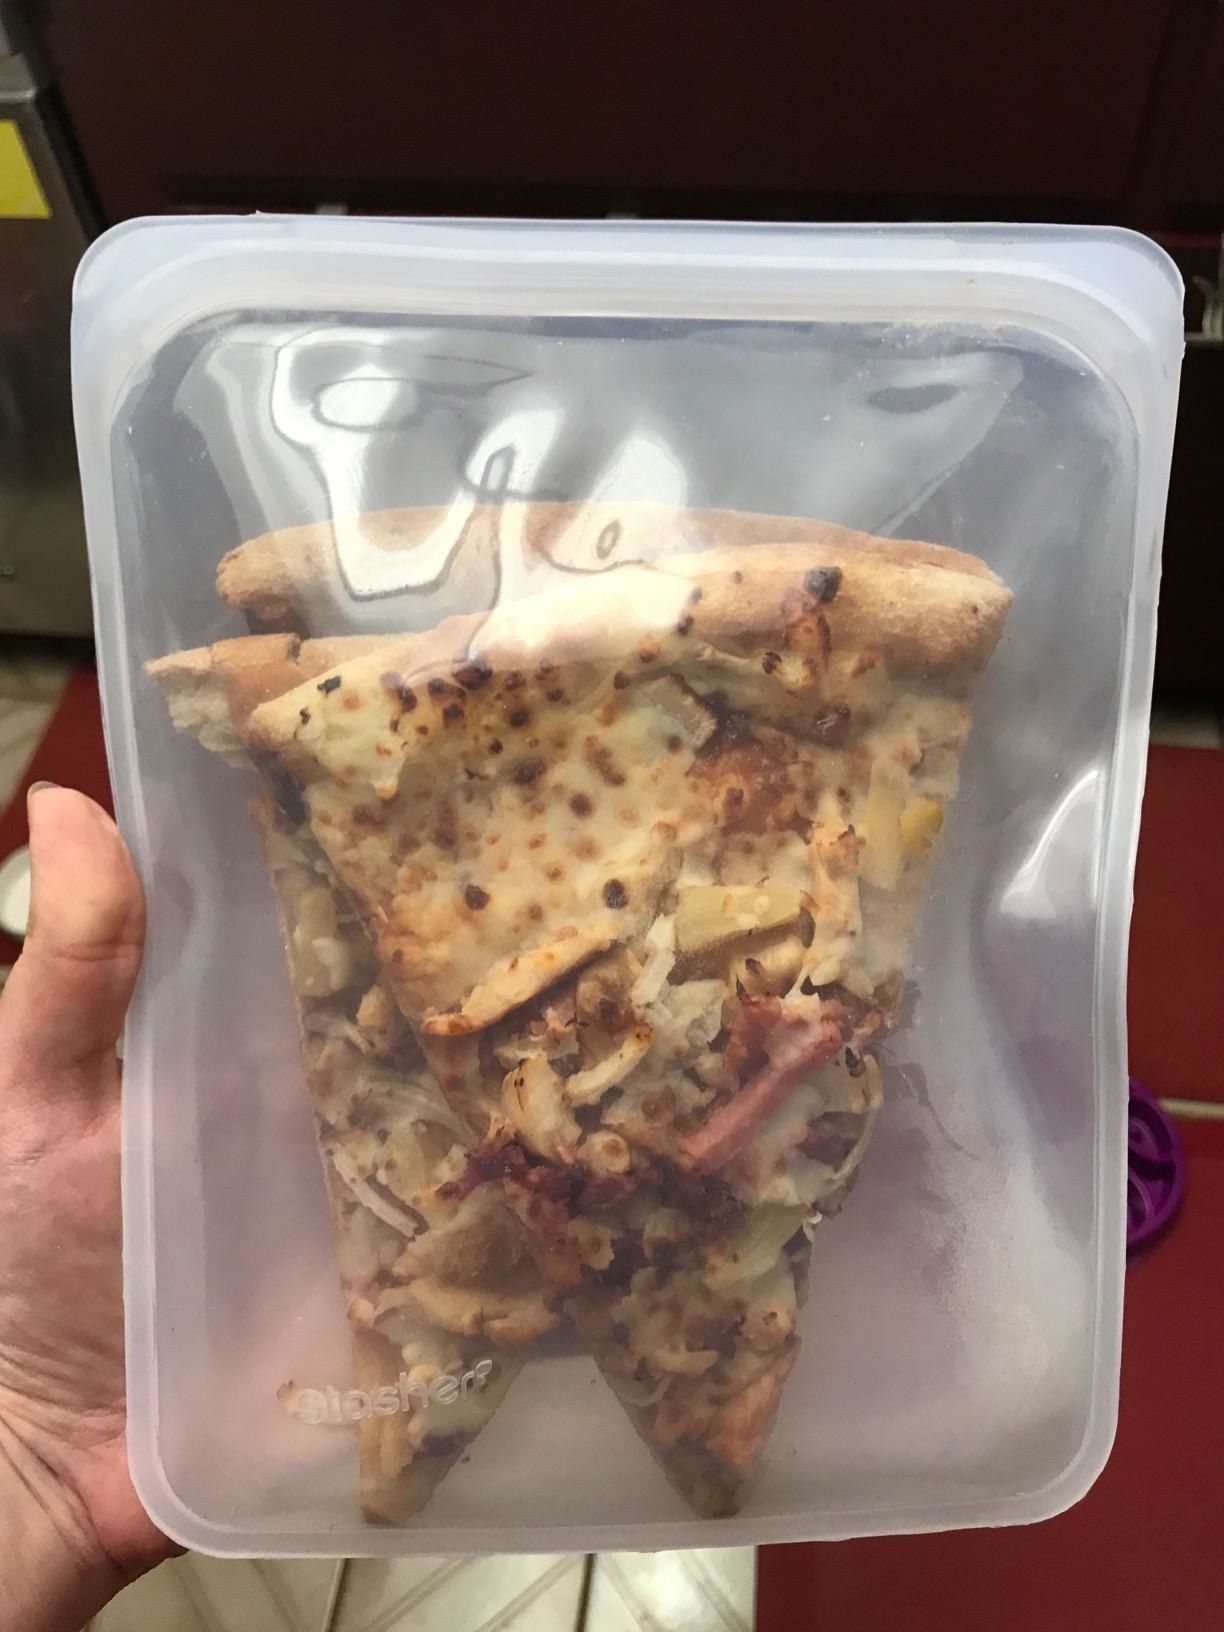 Pizza inside Stasher bag